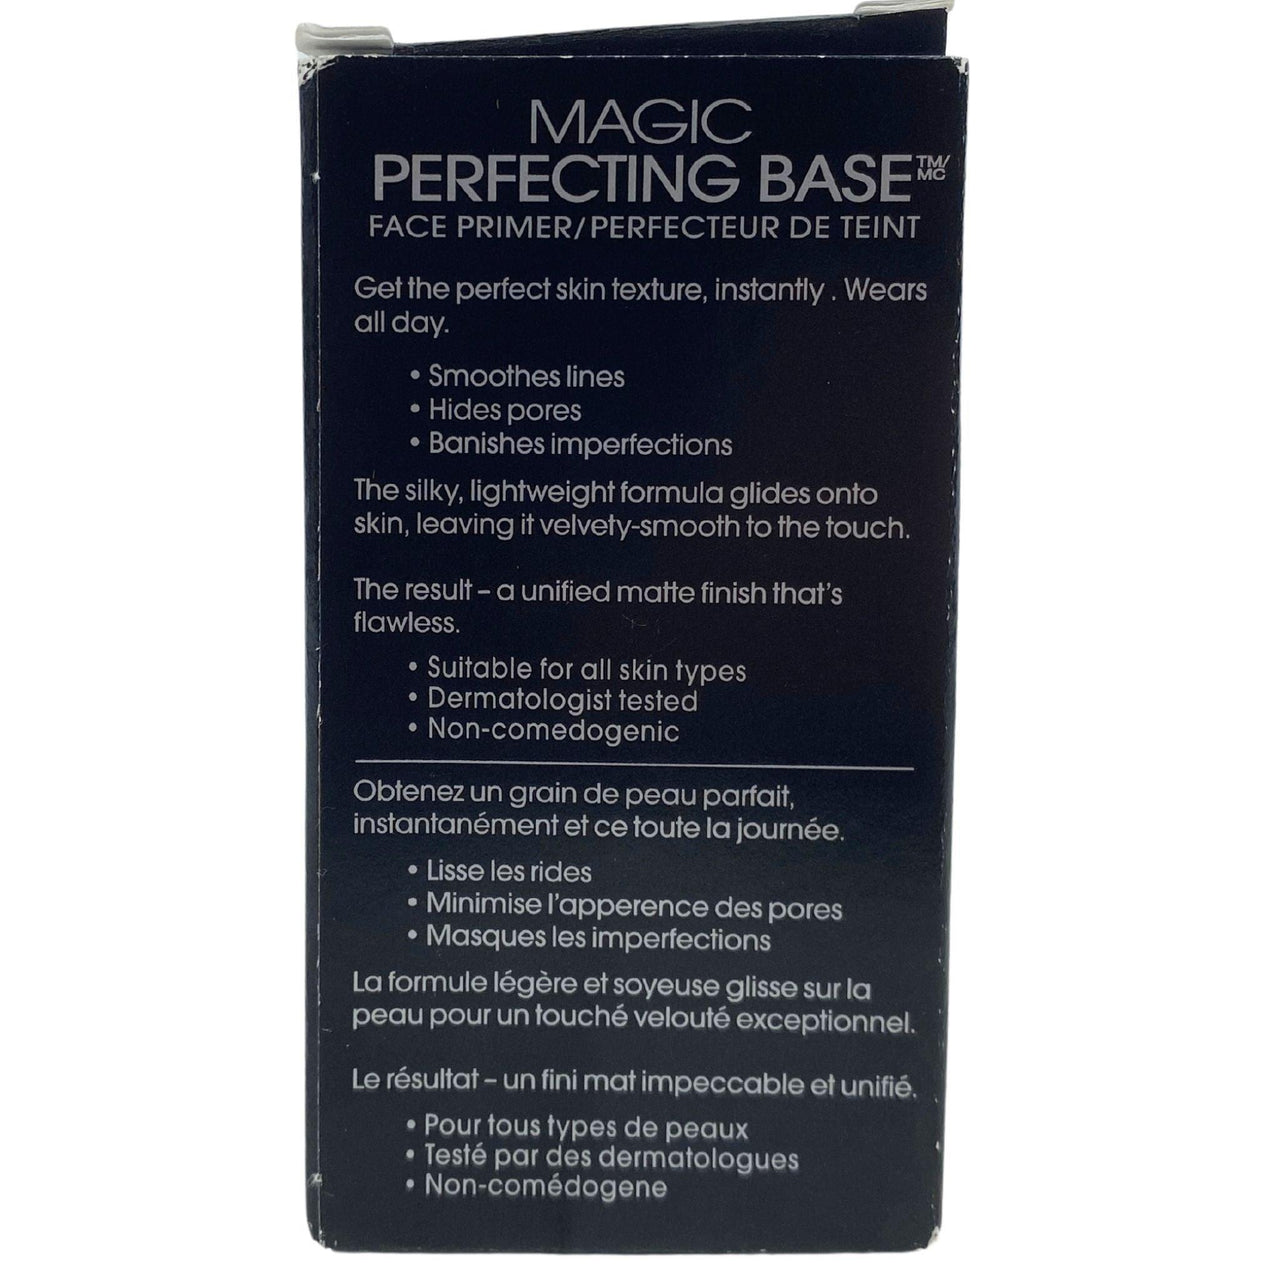 Loreal Magic Perfecting Base Face Primer 0.5 fl oz Studio Secrets 890 (50 Pcs Lot) - Discount Wholesalers Inc